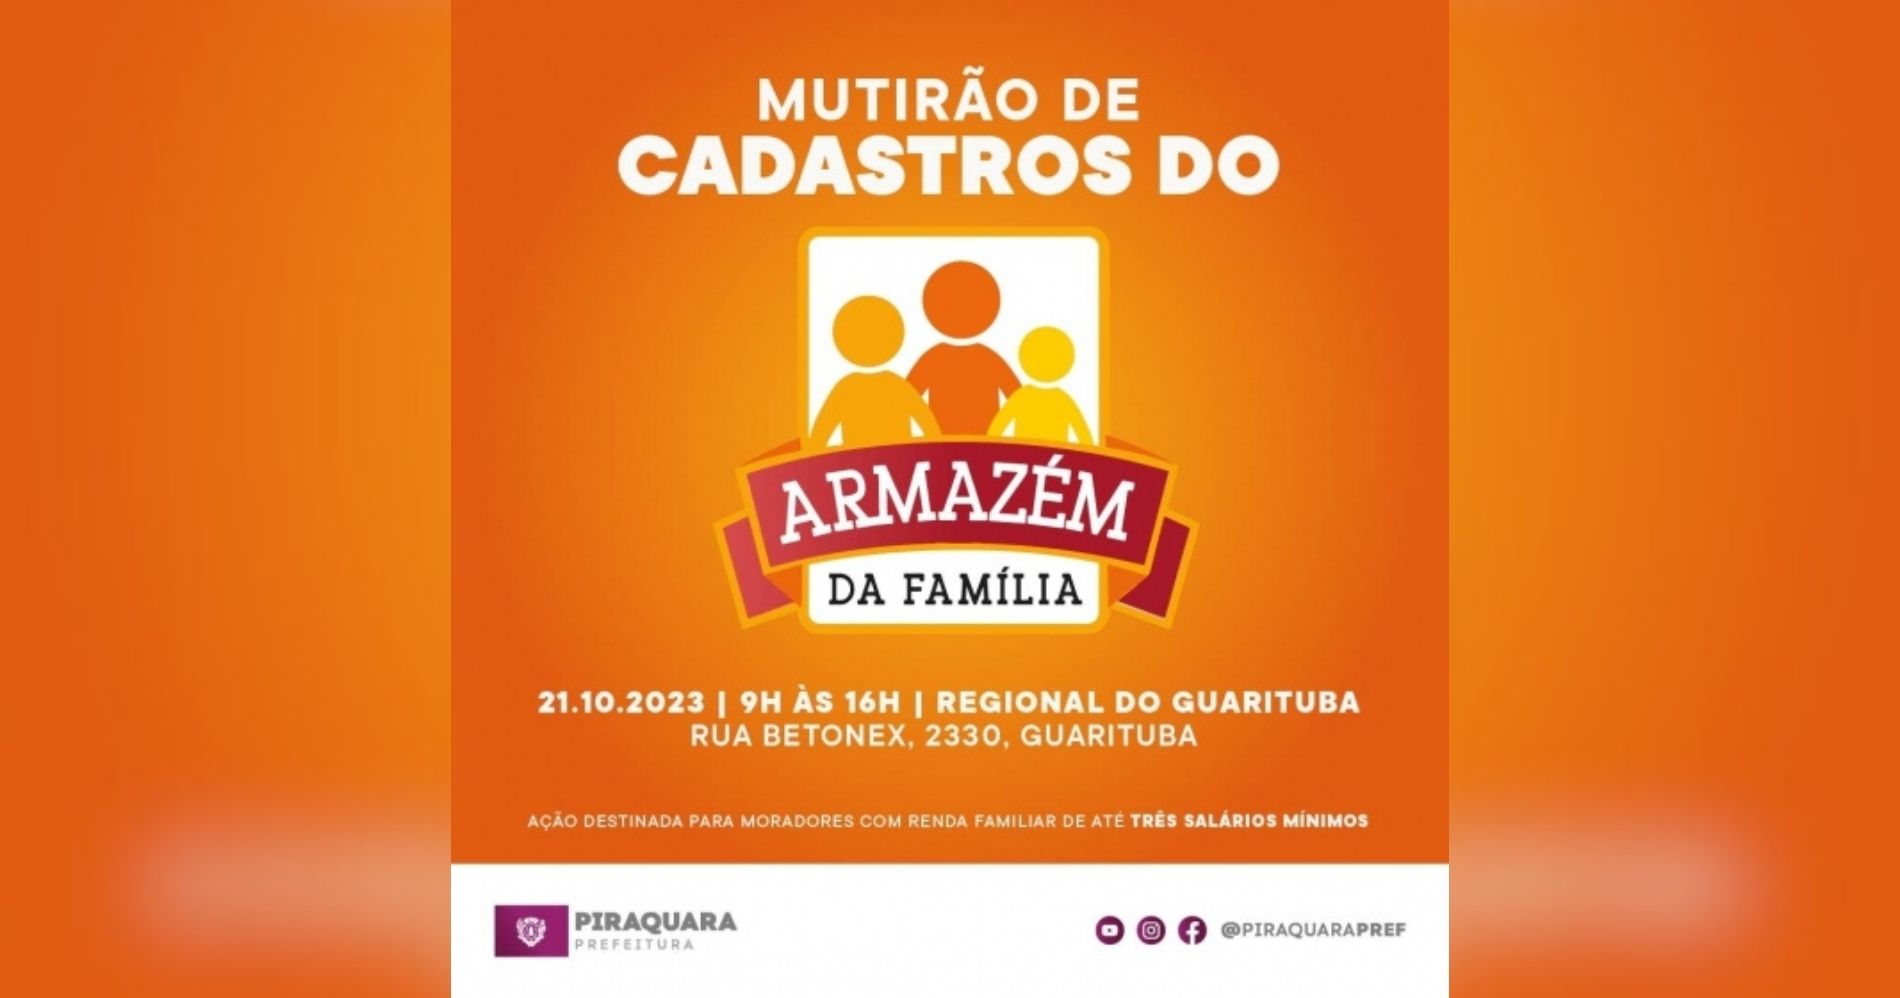 Prefeitura de Piraquara promove Mutirão de Cadastros do Armazém da Família